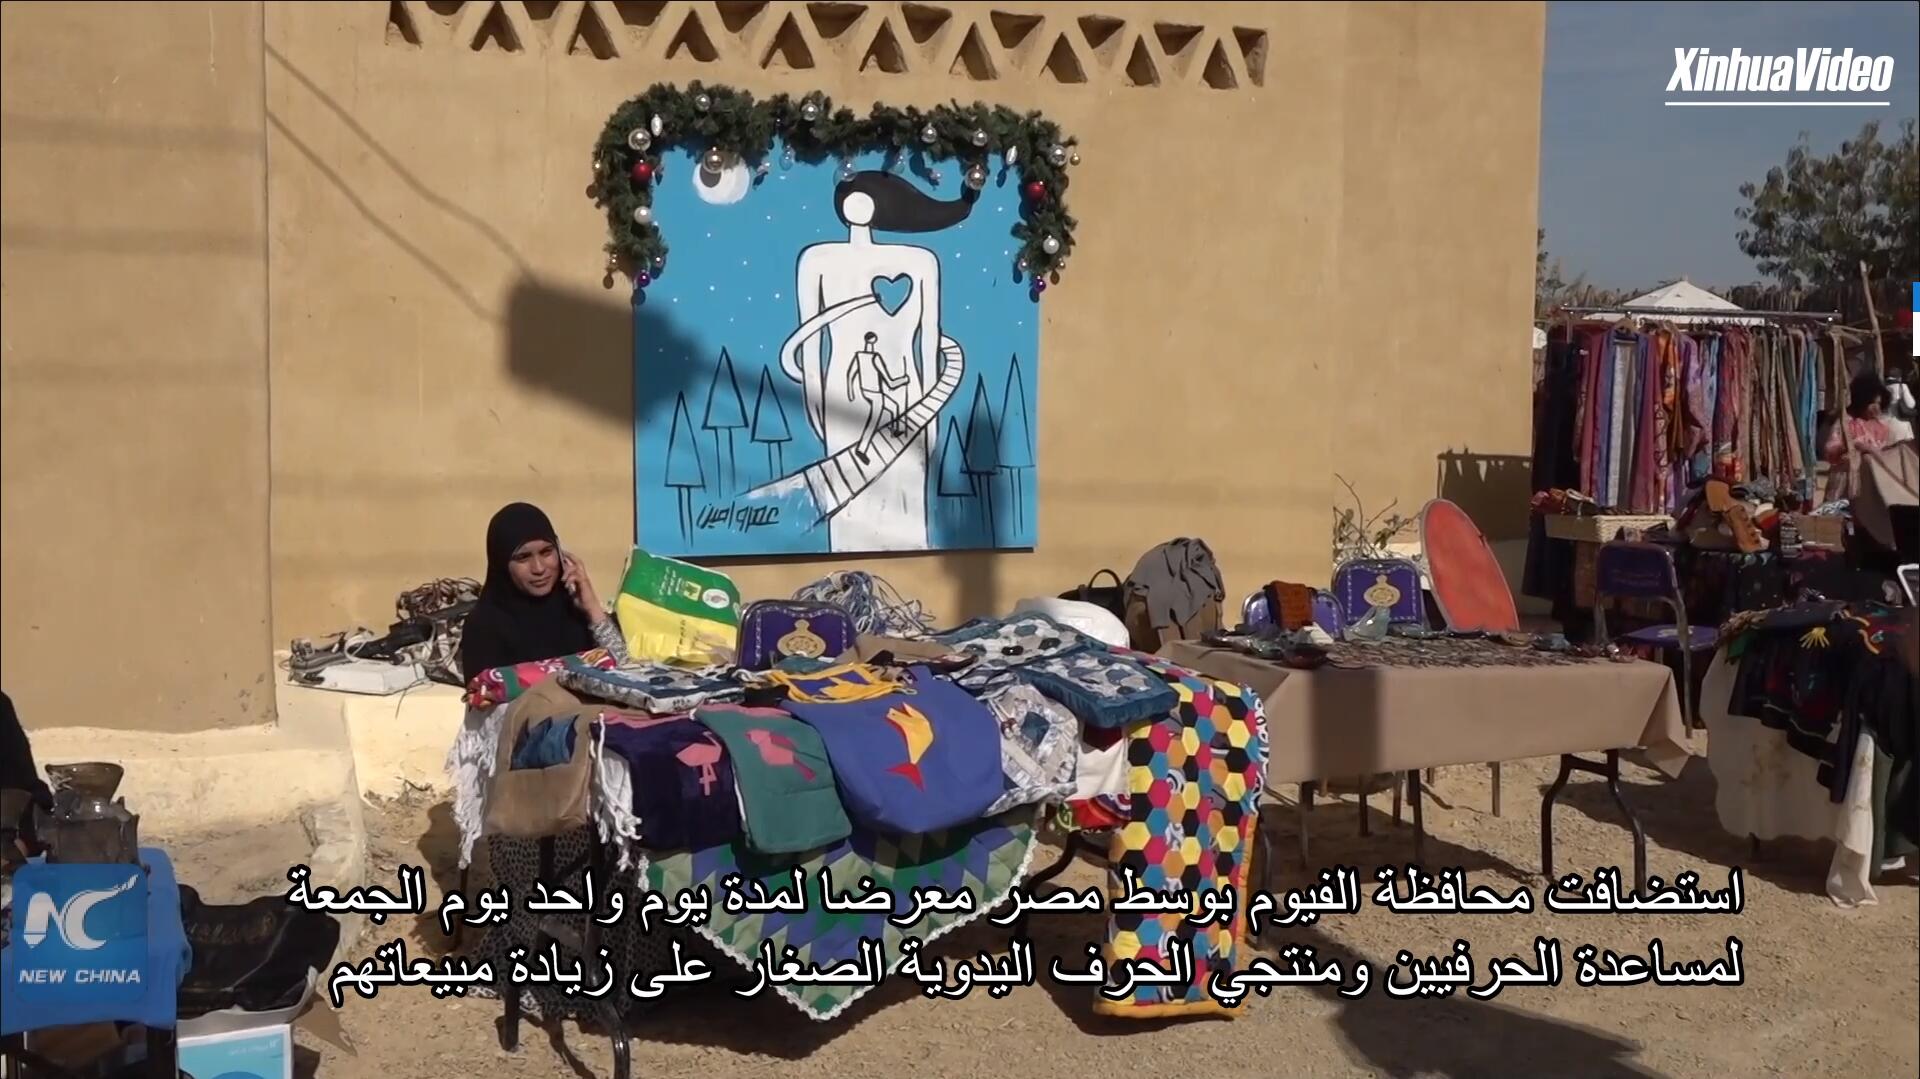 فيديو: مصر تستضيف معرضا لمساعدة صناع الحرف اليدوية صغيرة الحجم